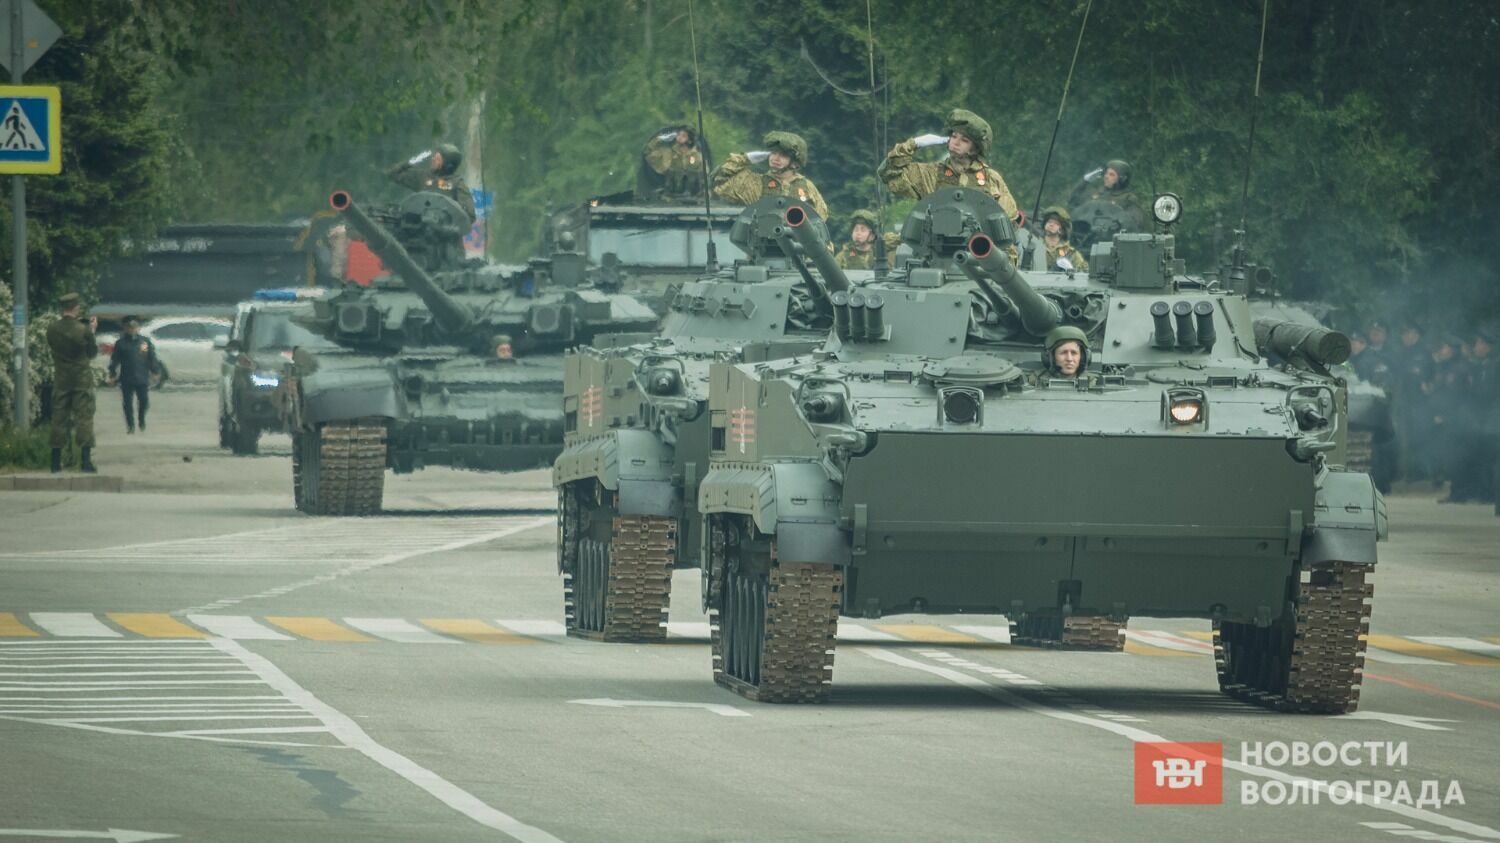 Девушки на танках — необычное явление для парада Победы